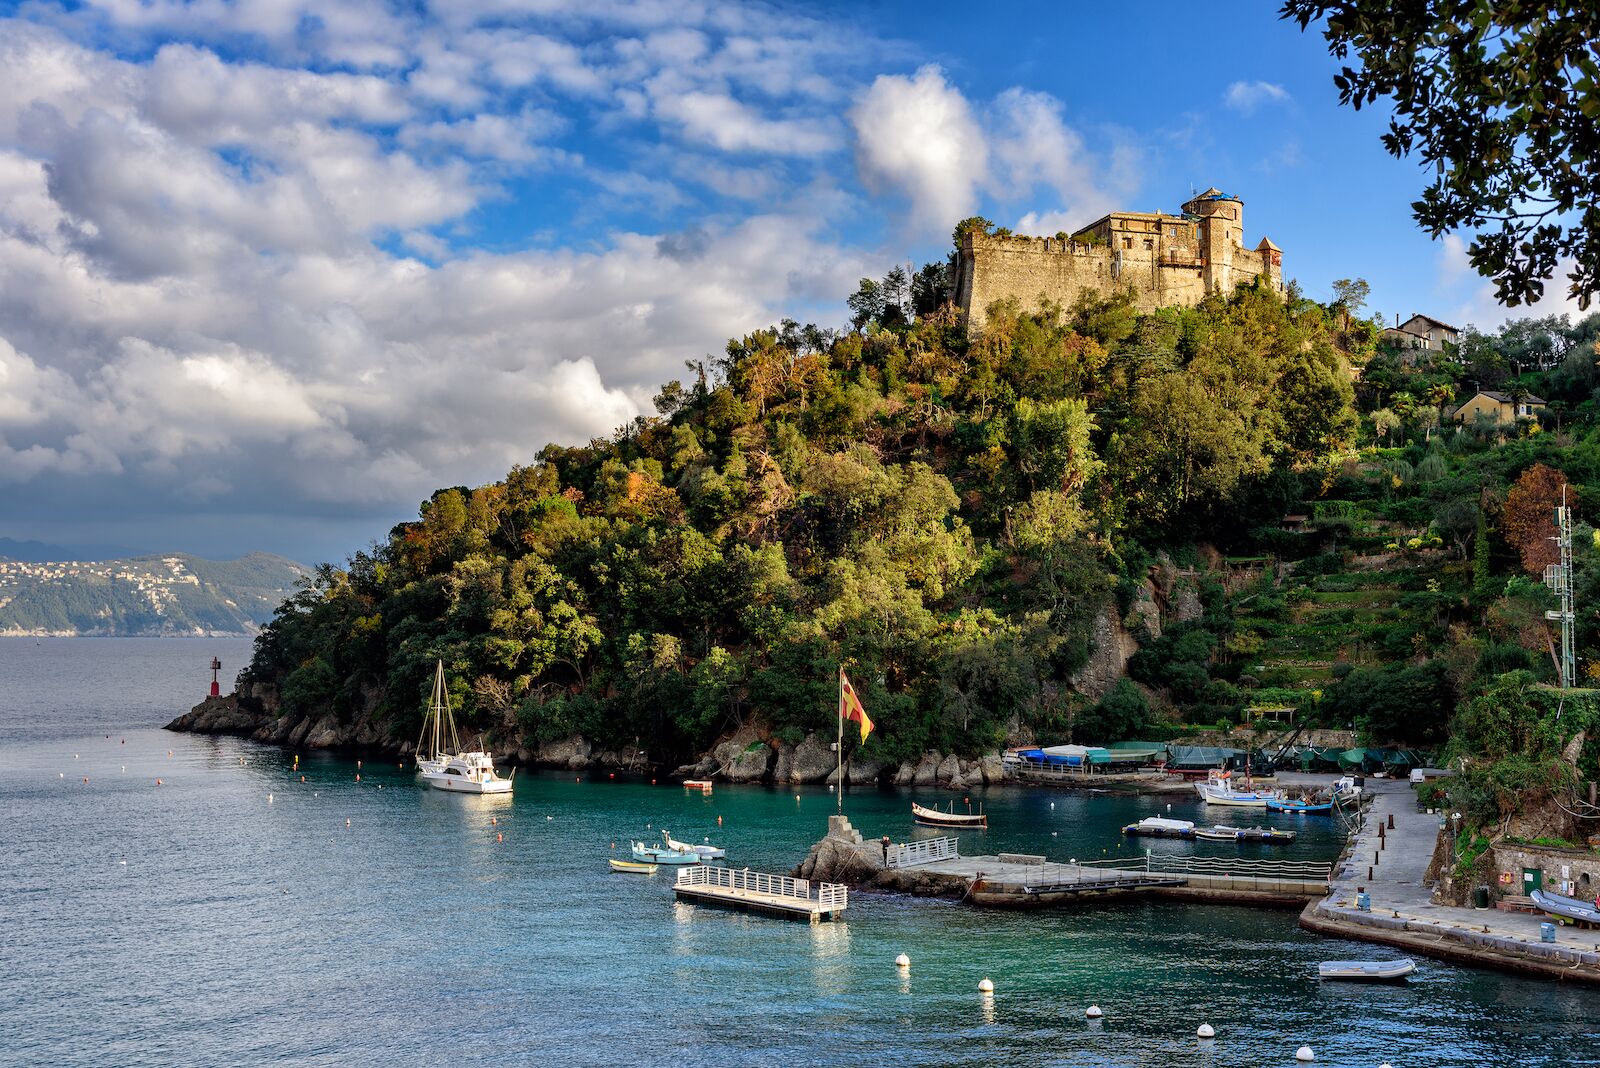 Antiguo castillo medieval, situado en una colina cerca del puerto de la ciudad de Portofino, Italia